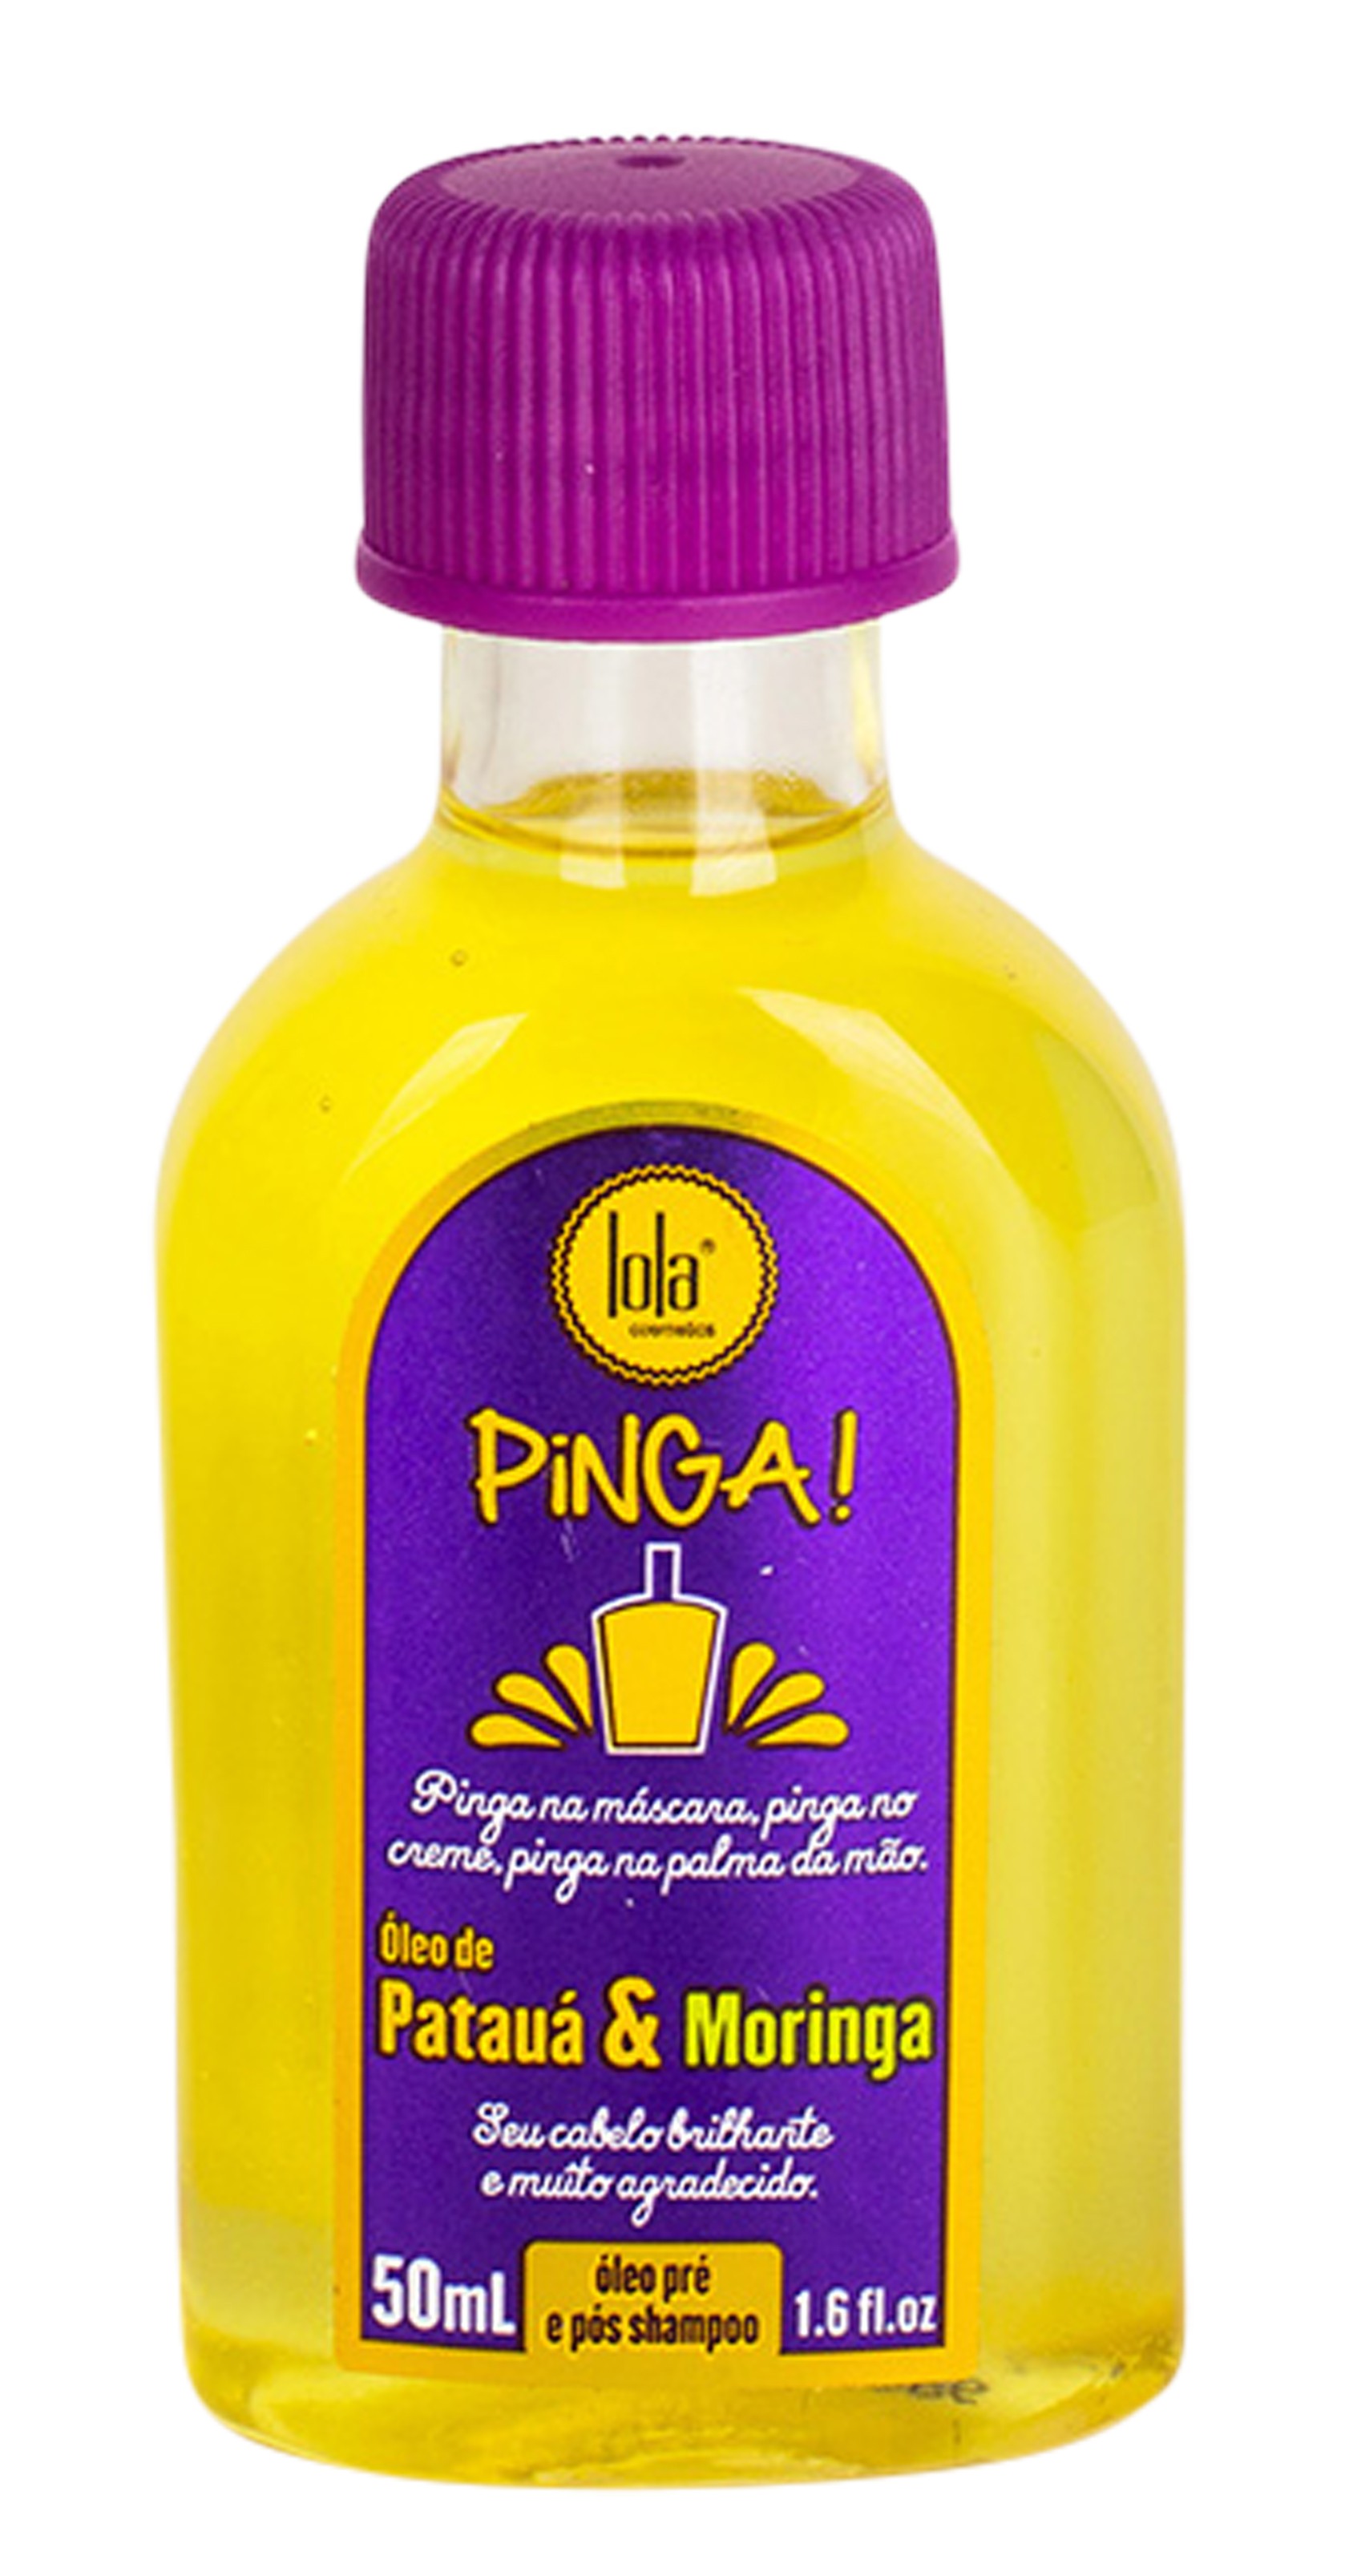 Óleo multifuncional Pinga! Patauá&Moringa, Lola Cosmetics (Foto: Divulgação)